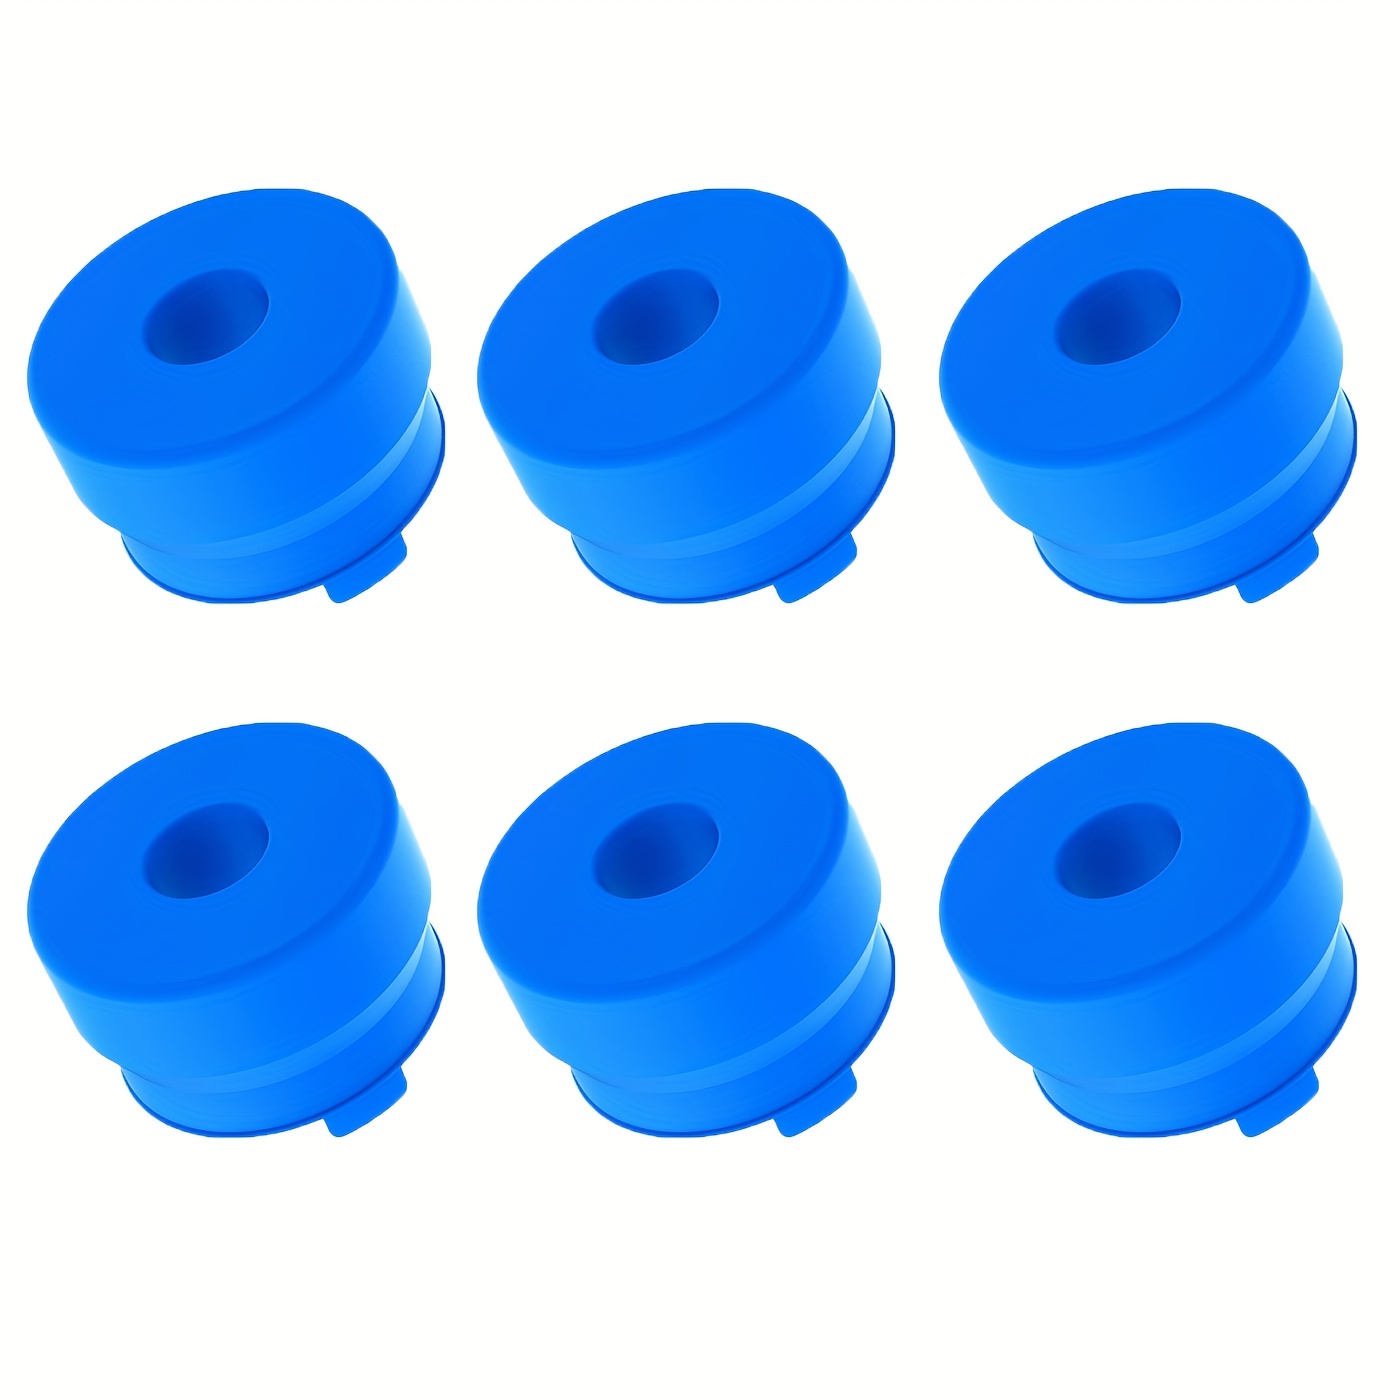 Bouchons de bouteille d'eau / pichet de 5 gallons réutilisables - Couvercle  de pichet en silicone durable pour bouteilles de 55 mm (paquet de 2/4)